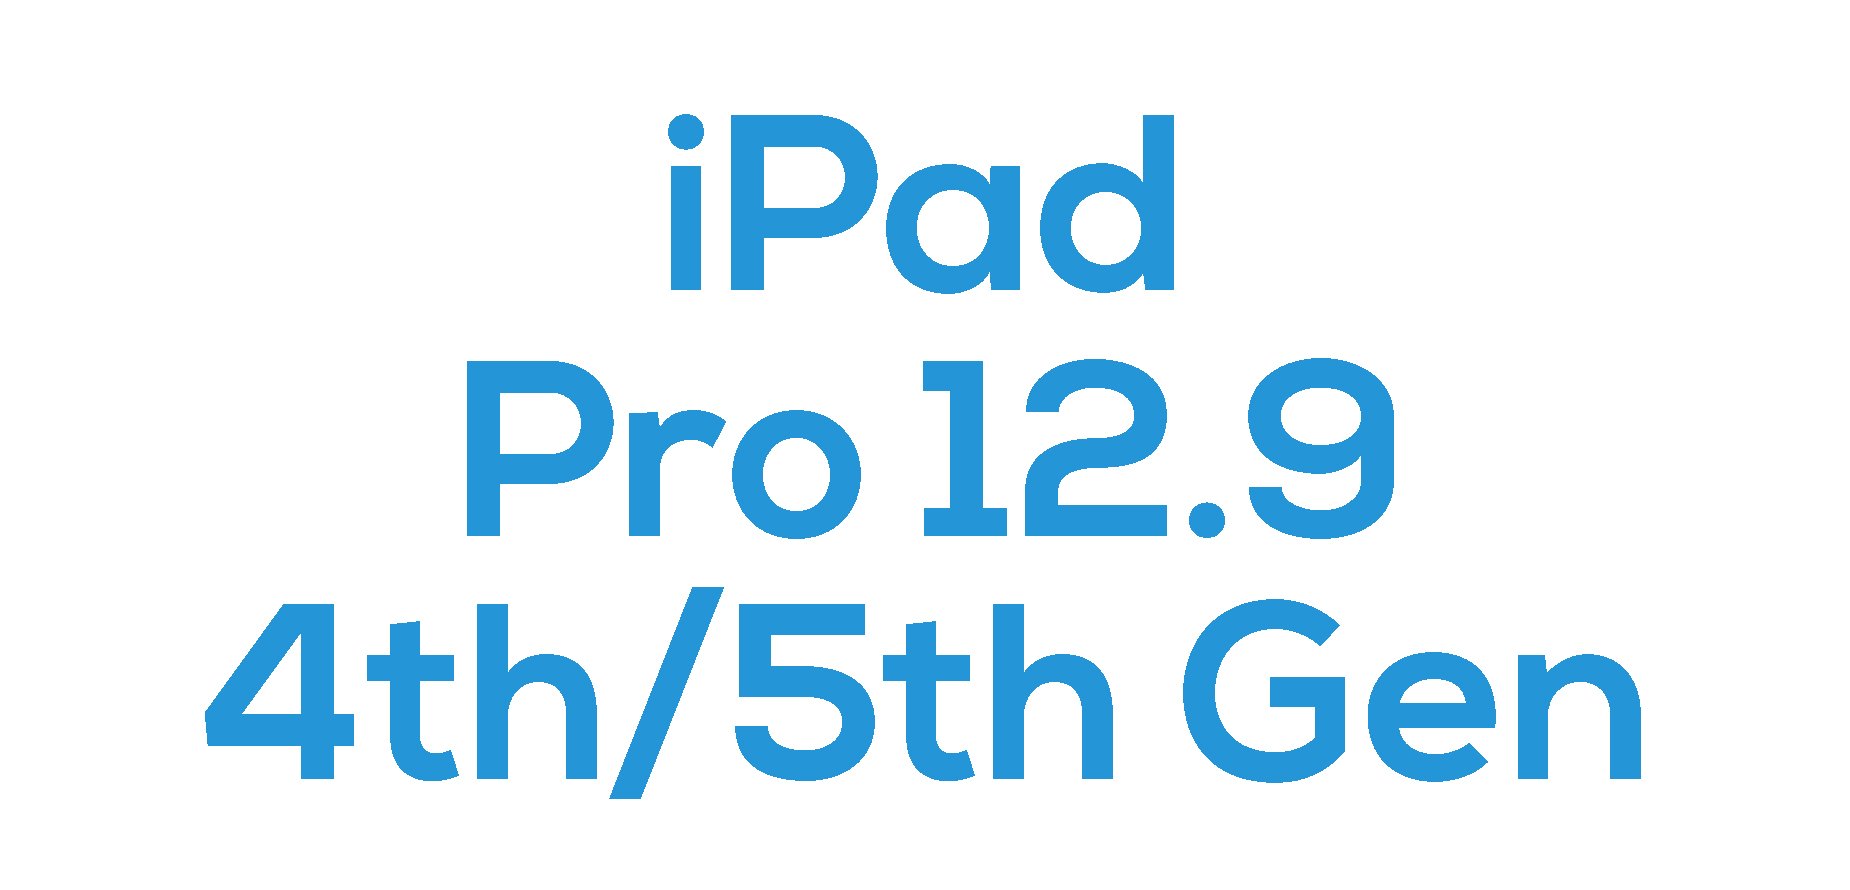 iPad Pro 12.9 (4th/5th Gen)